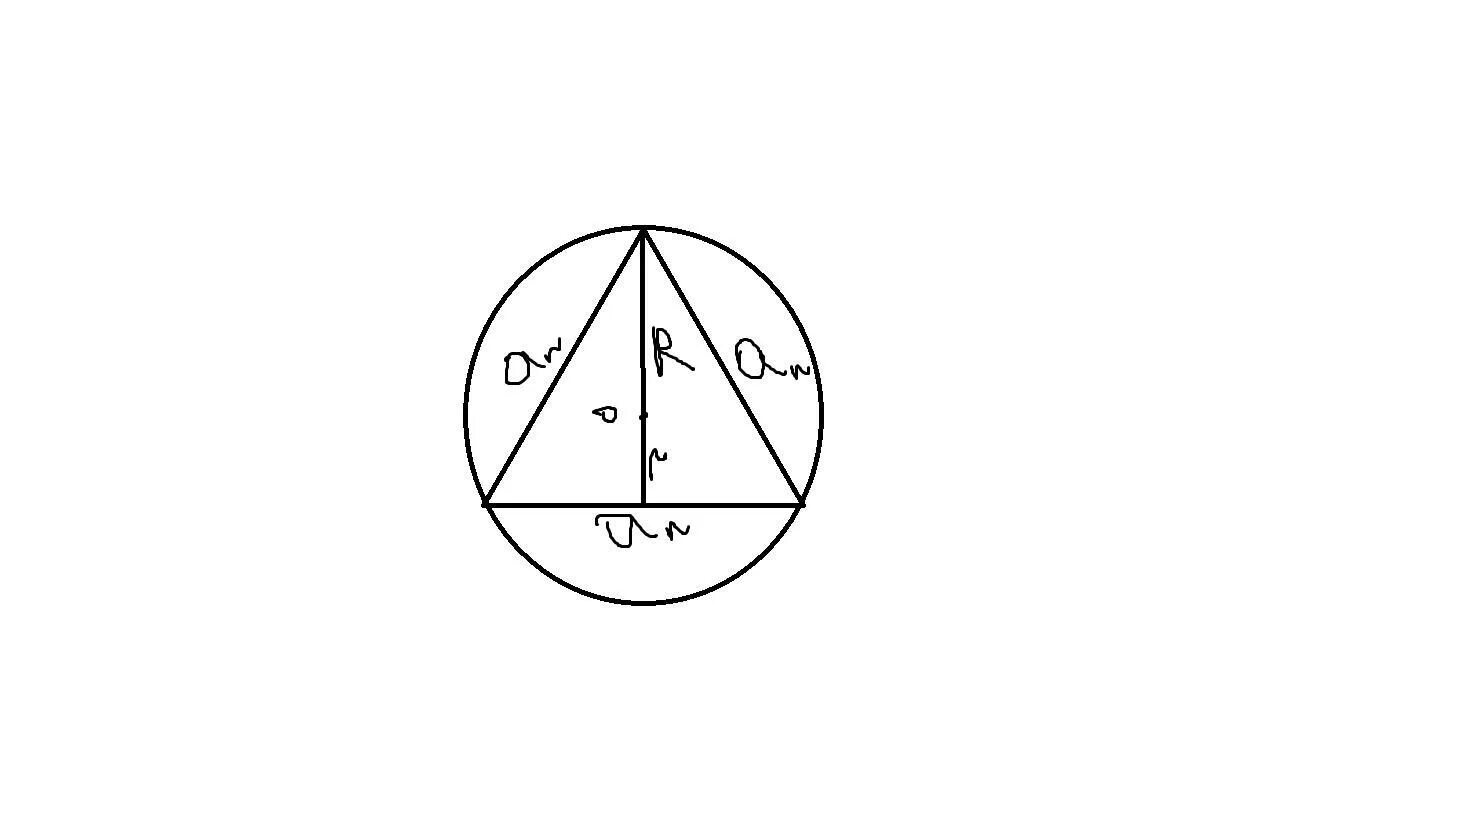 Радиус описанной окружности равностороннего треугольника формула. Радиус окружности описанной около равностороннего треугольника. Радиус описанной окружности равностороннего треугольника. Формула описанной окружности равностороннего треугольника. Равносторонний треугольник вписанный в окружность.